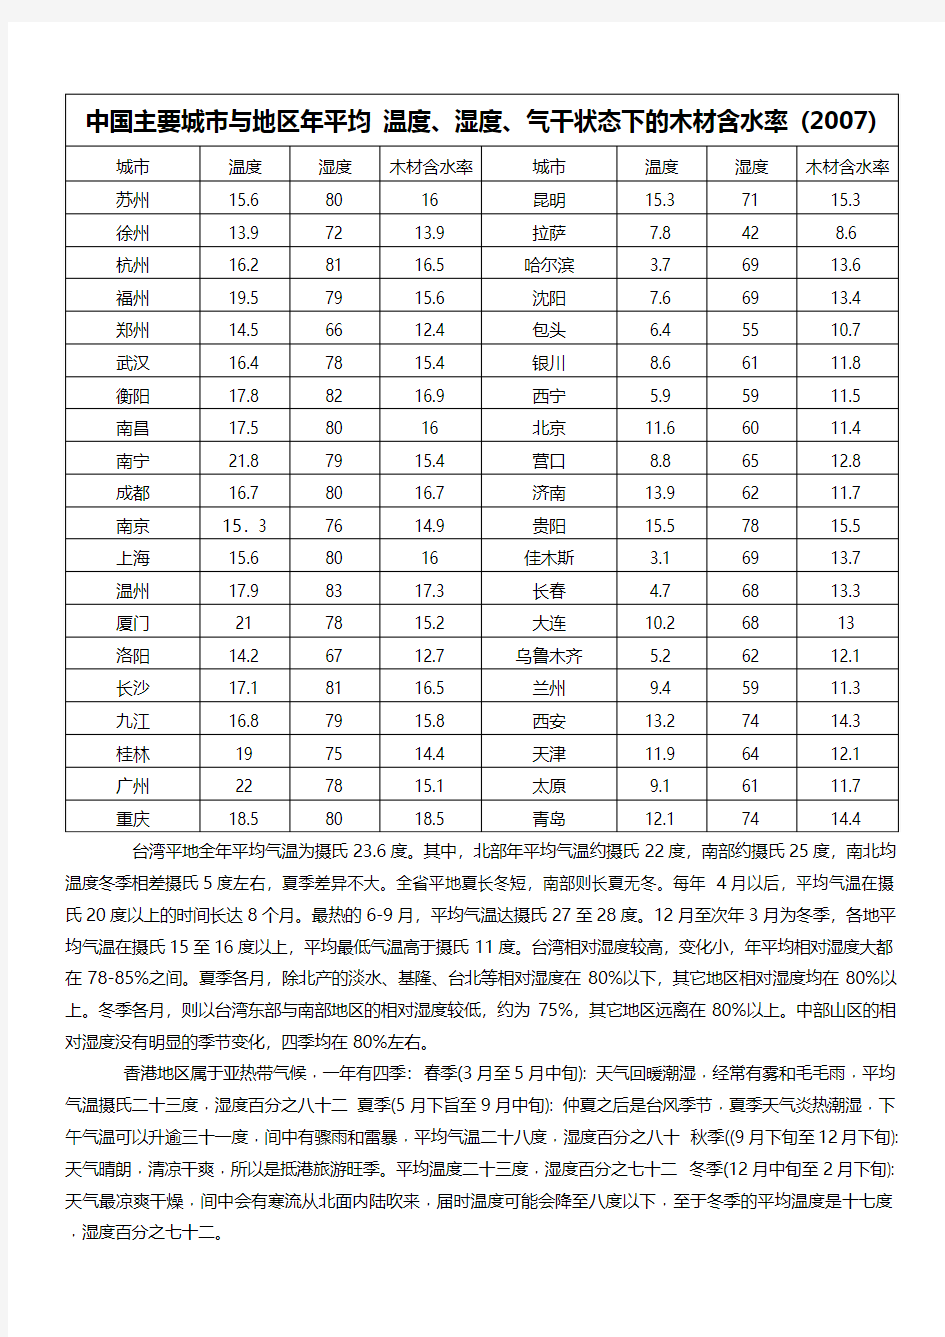 中国主要城市年平均温度、湿度、木材含水率